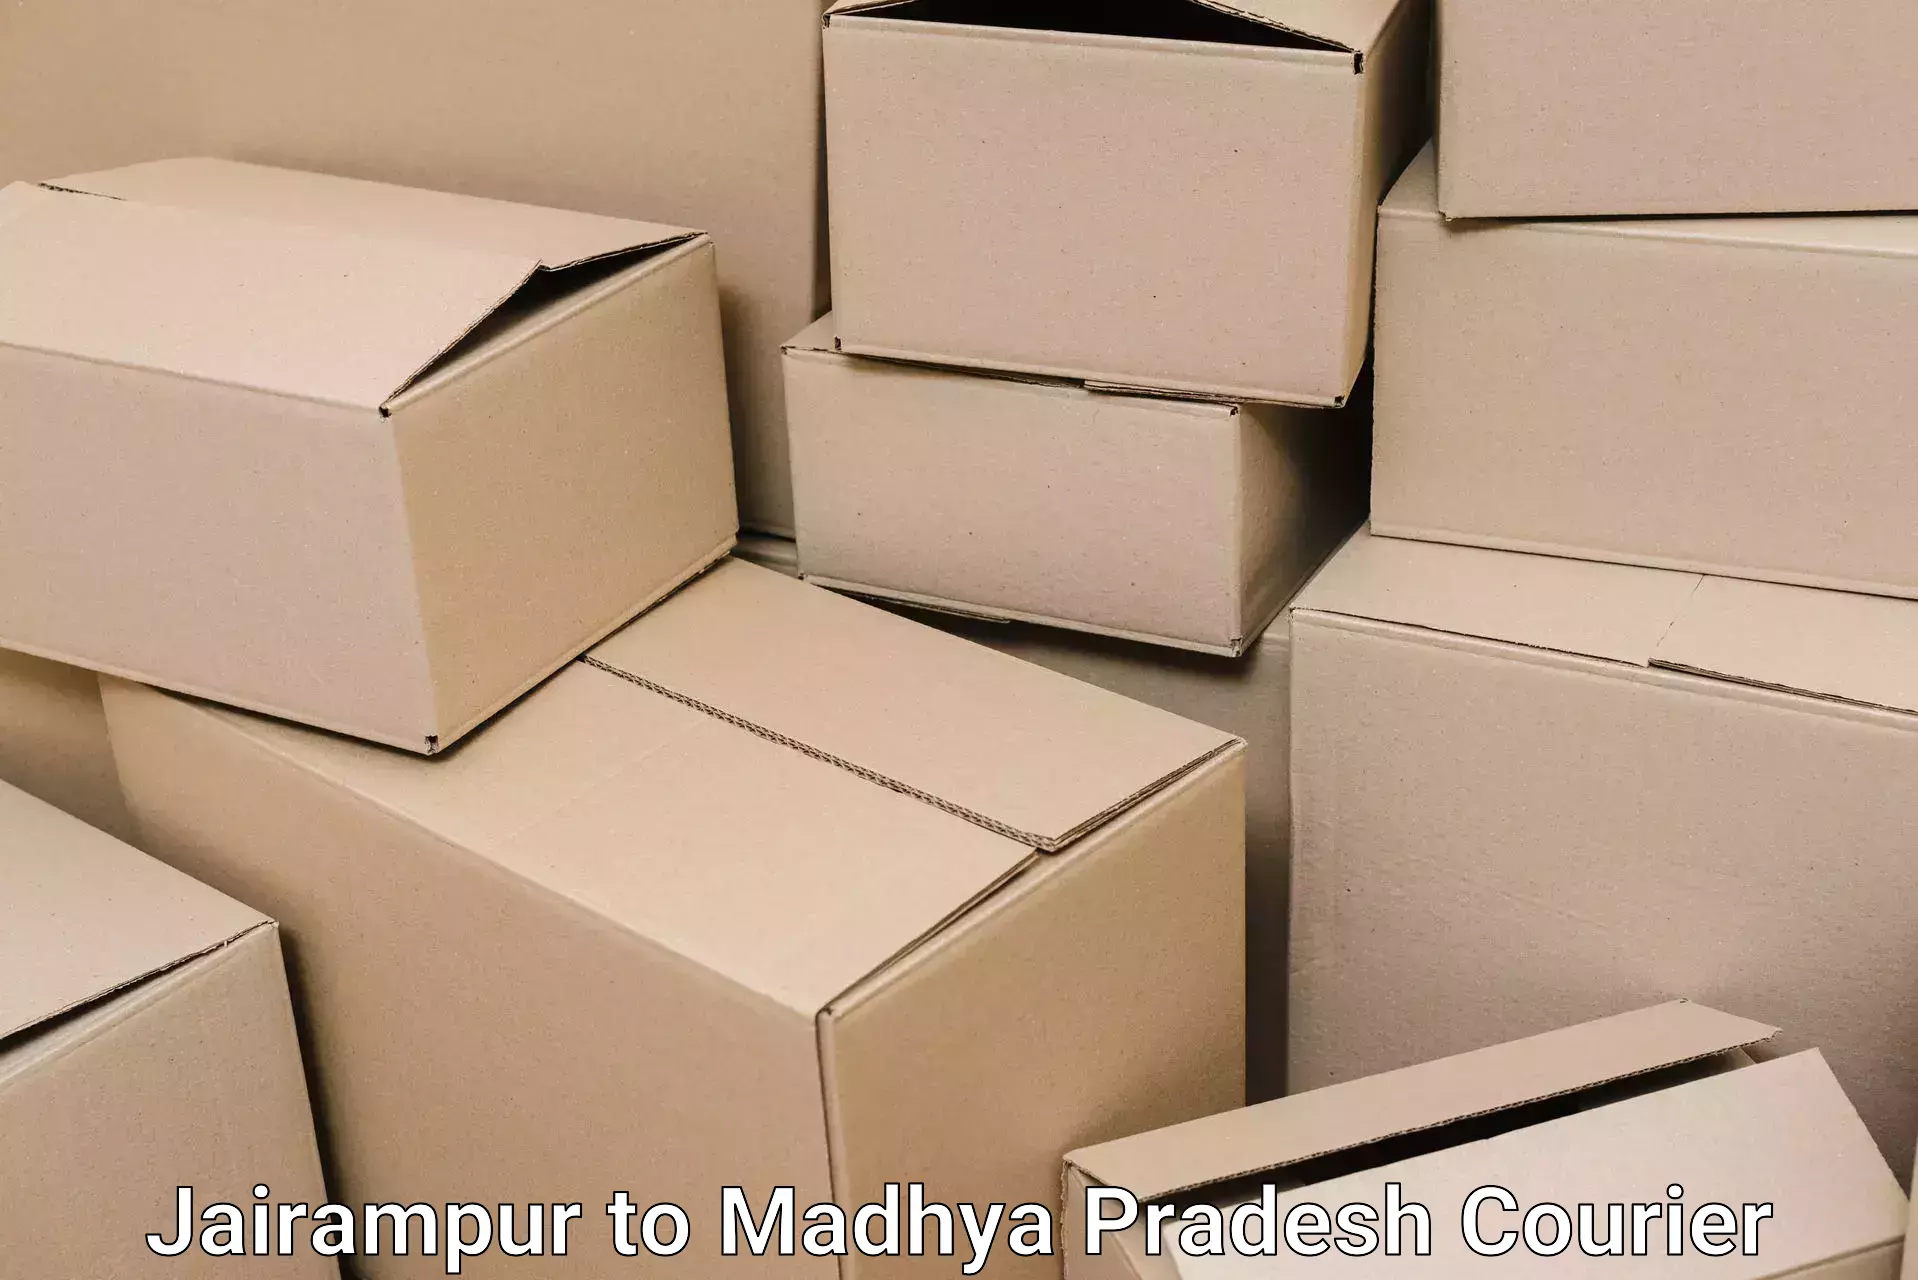 Moving and packing experts Jairampur to Madhya Pradesh